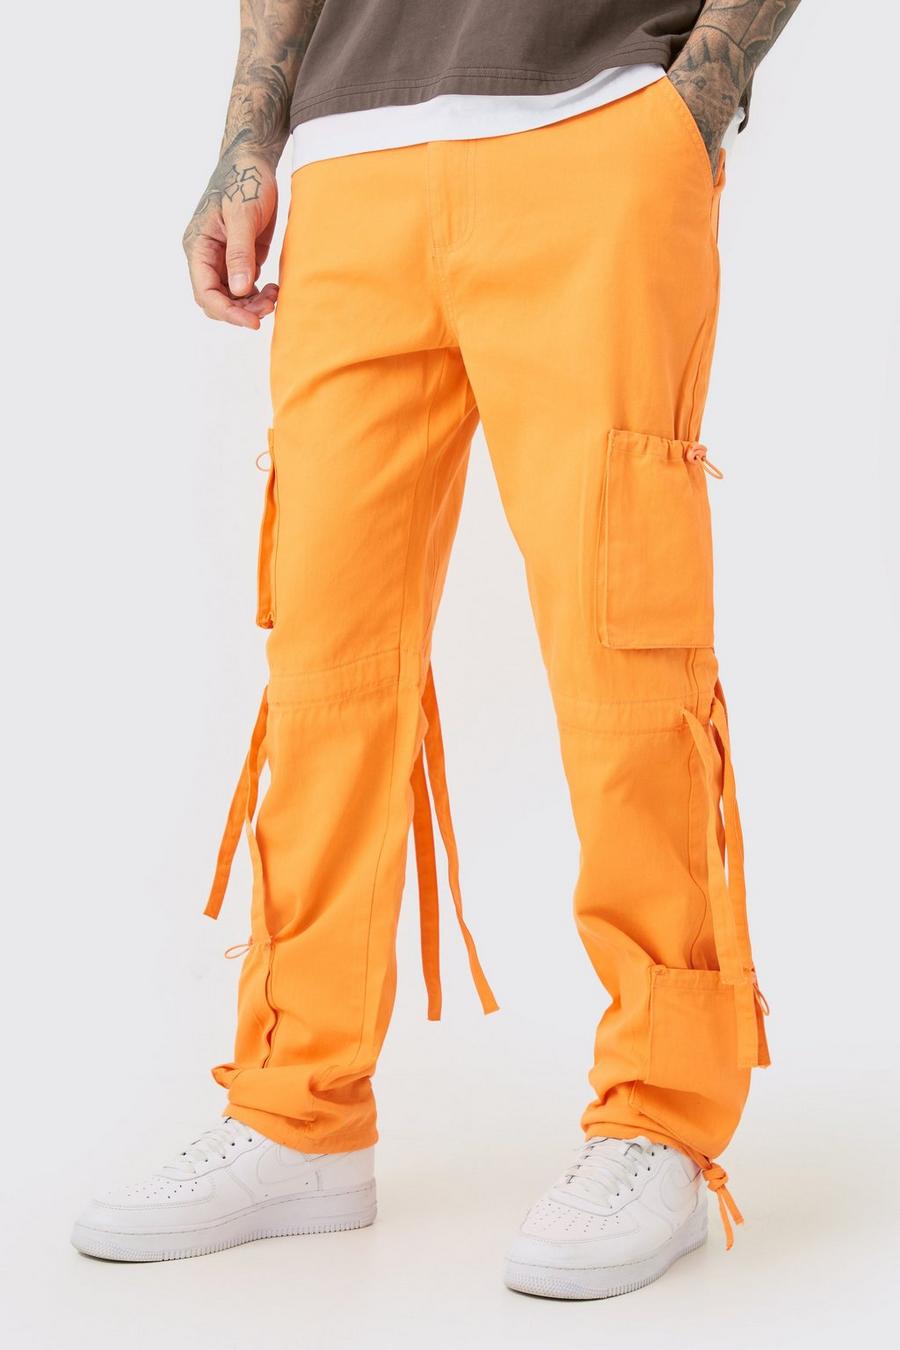 Pantaloni Cargo Tall in twill slavato con vita fissa, Orange